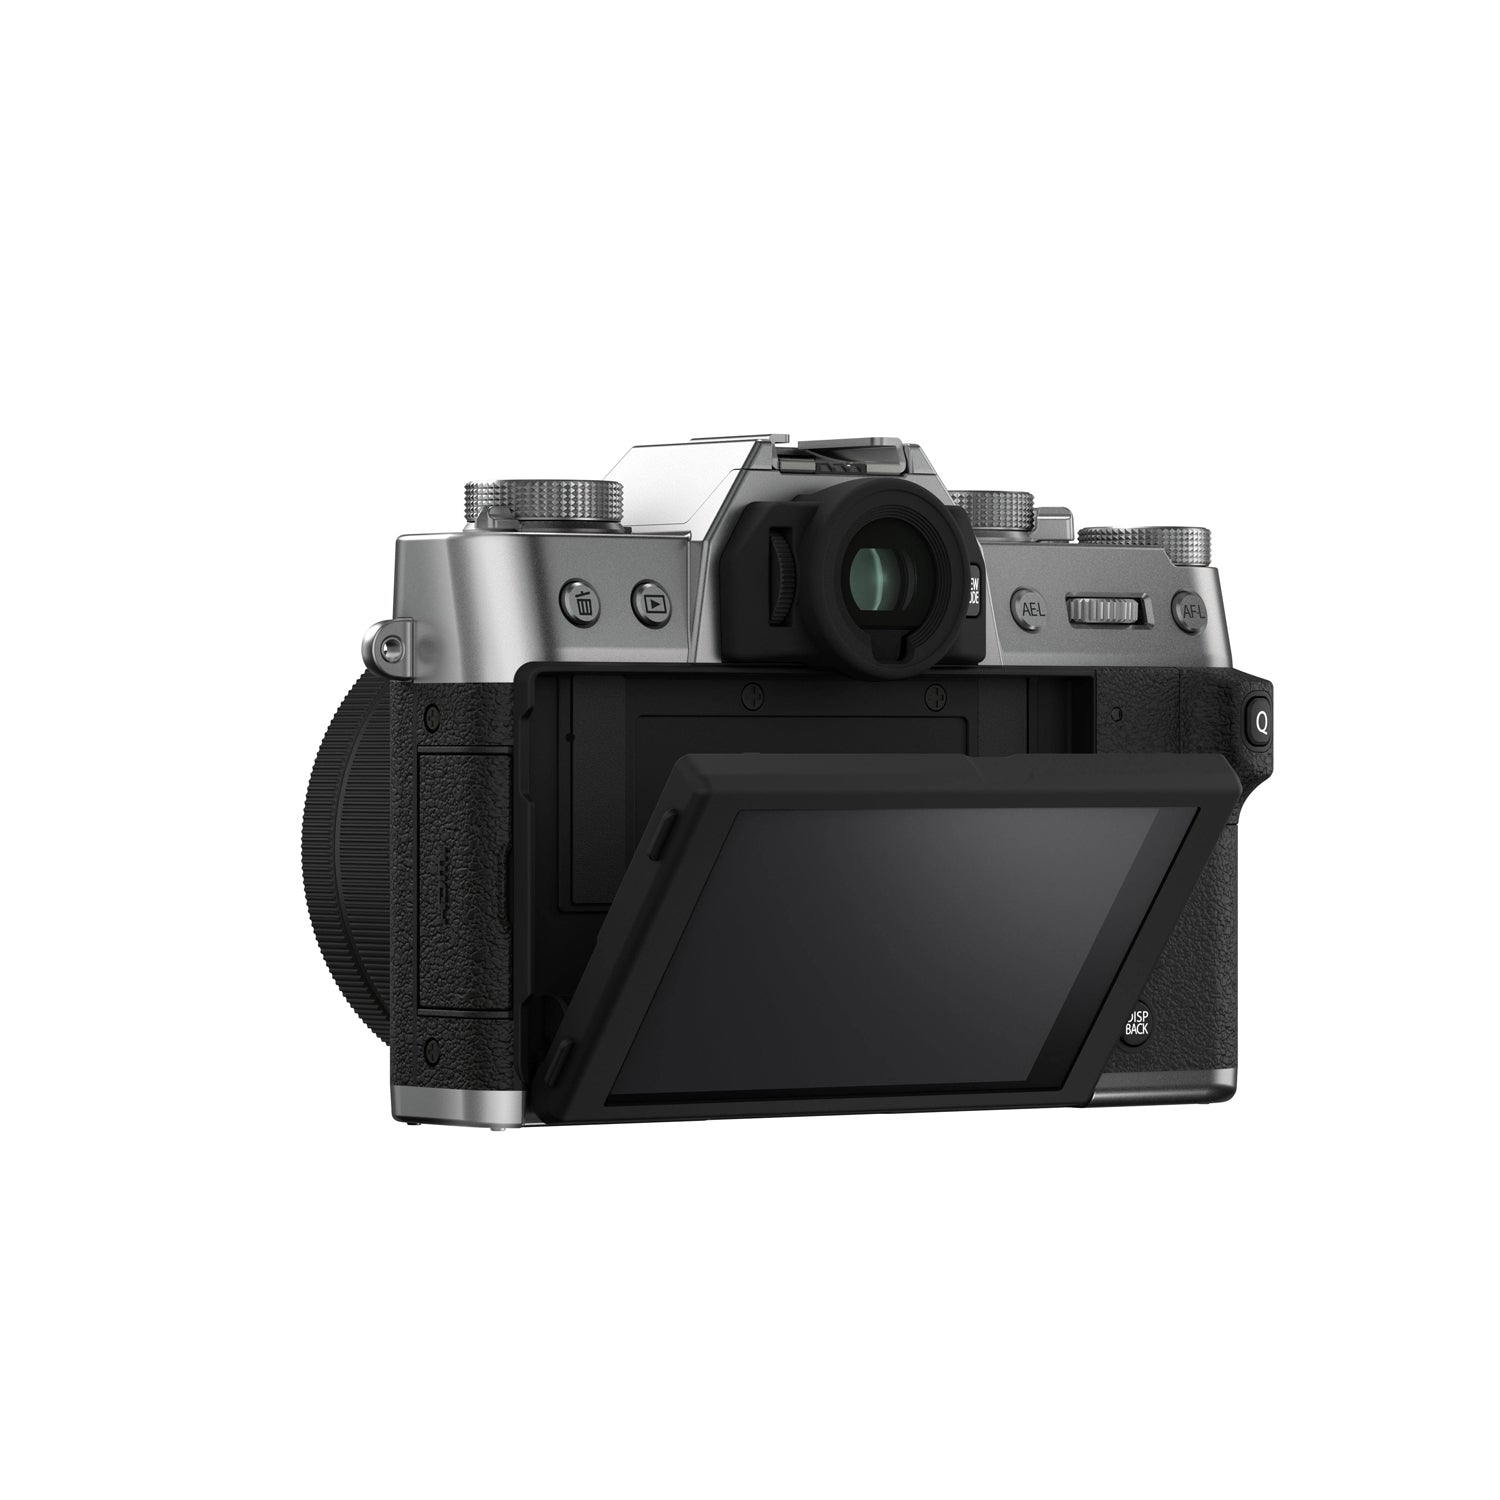 Fujifilm X Series X-T30 II Digital Camera with Fujinon XC15-45mm F3.5-5.6 OIS PZ Kit Lens